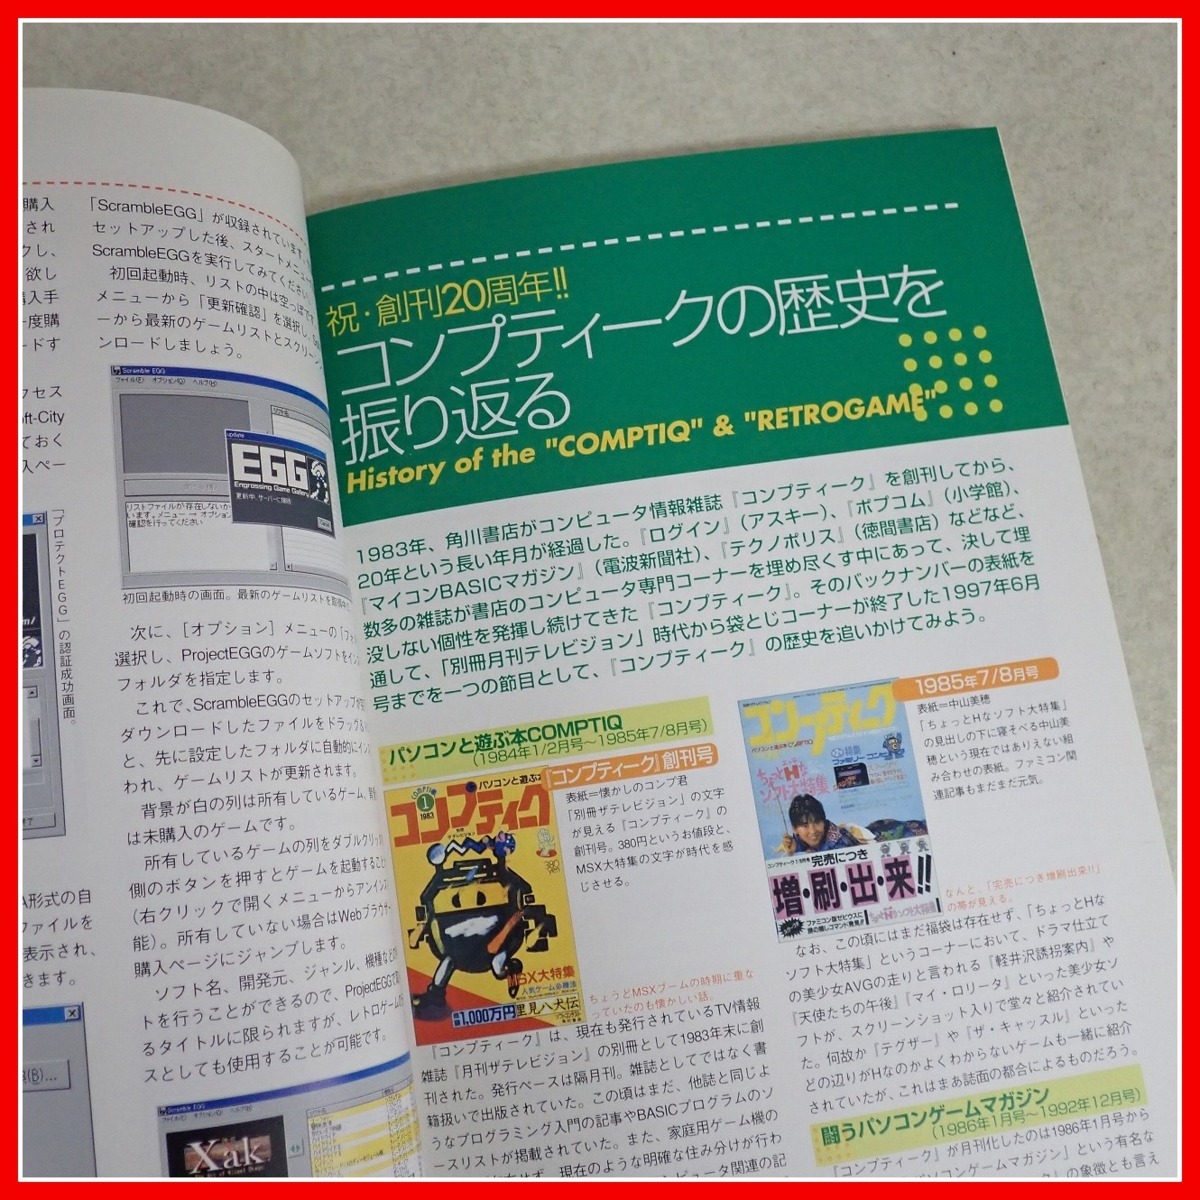 * литература PC-9801 игра Revival коллекция дополнение CD-ROM есть Kadokawa Shoten [10